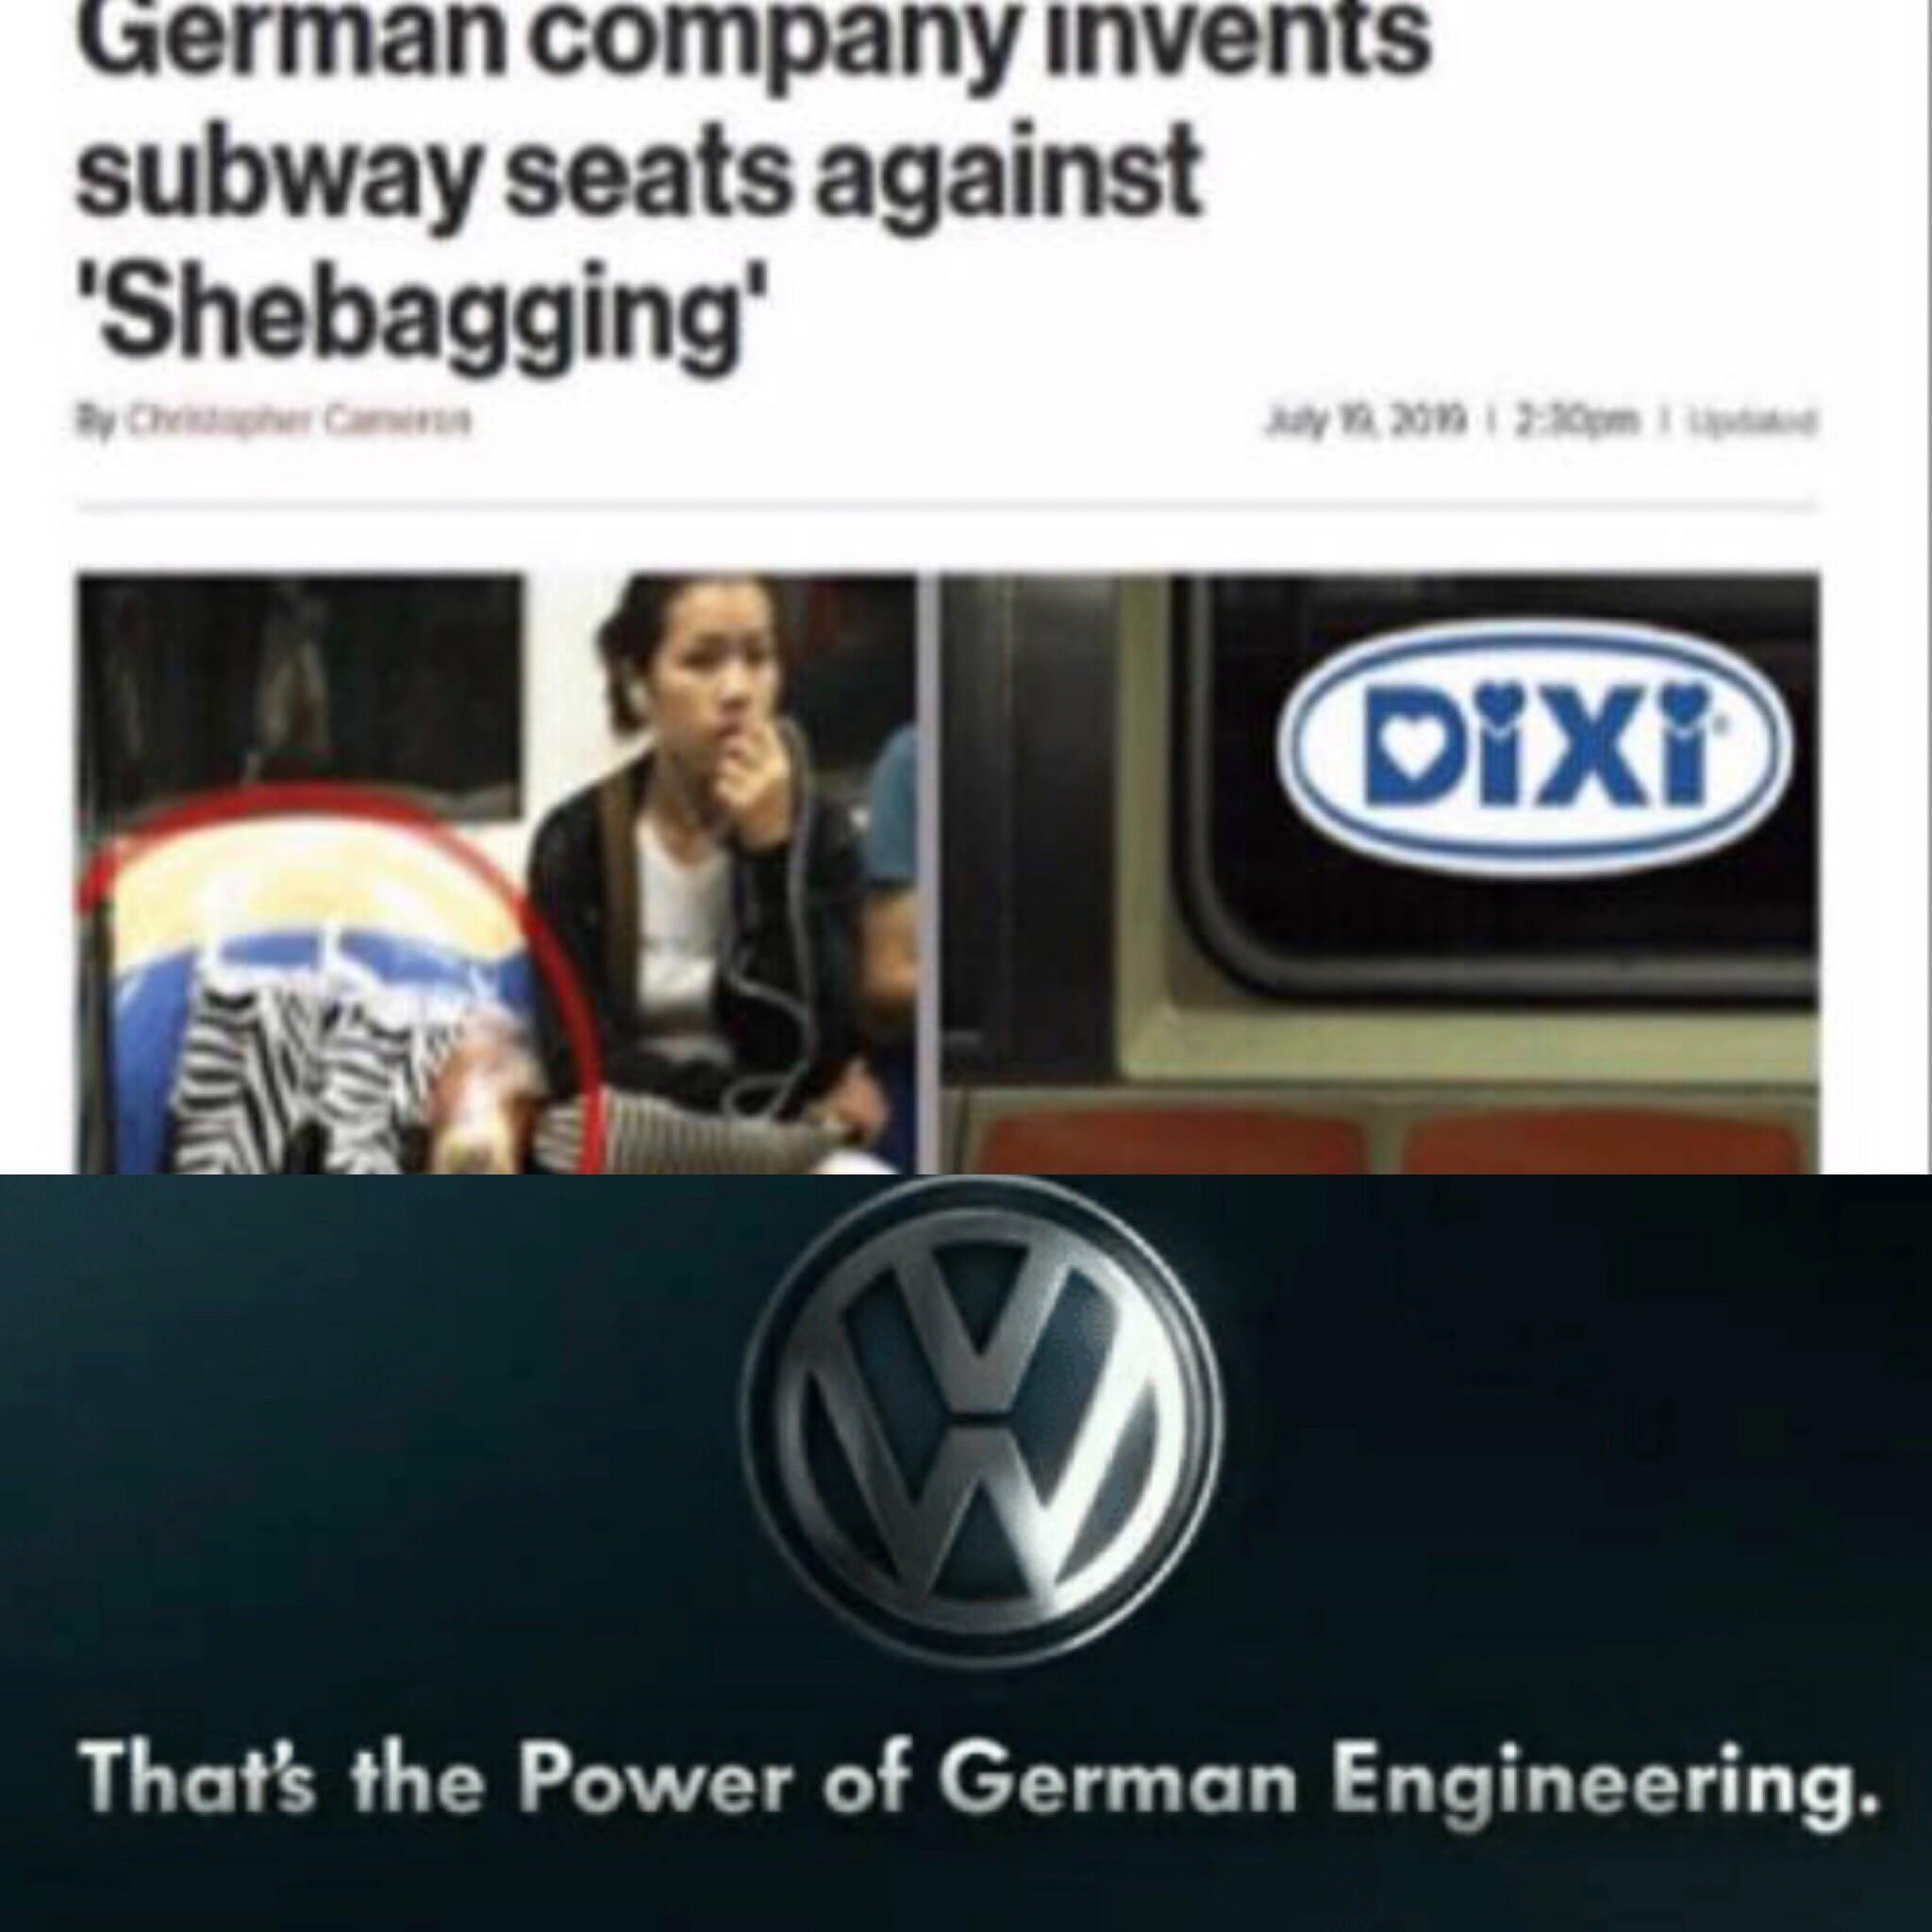 German engineering at it's best.